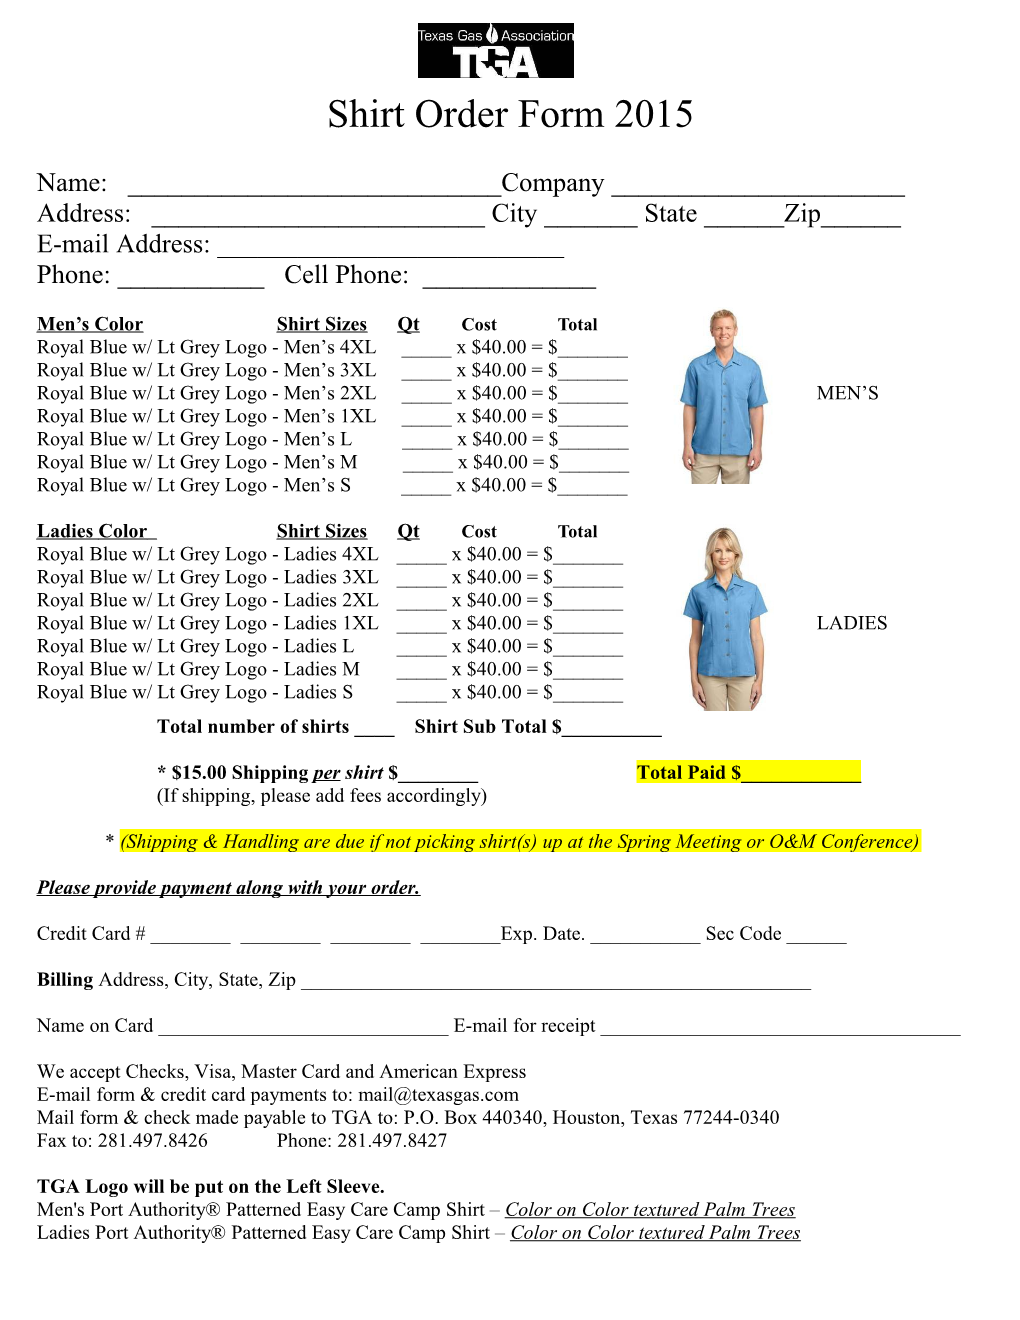 TGA Shirt Order Form 2007